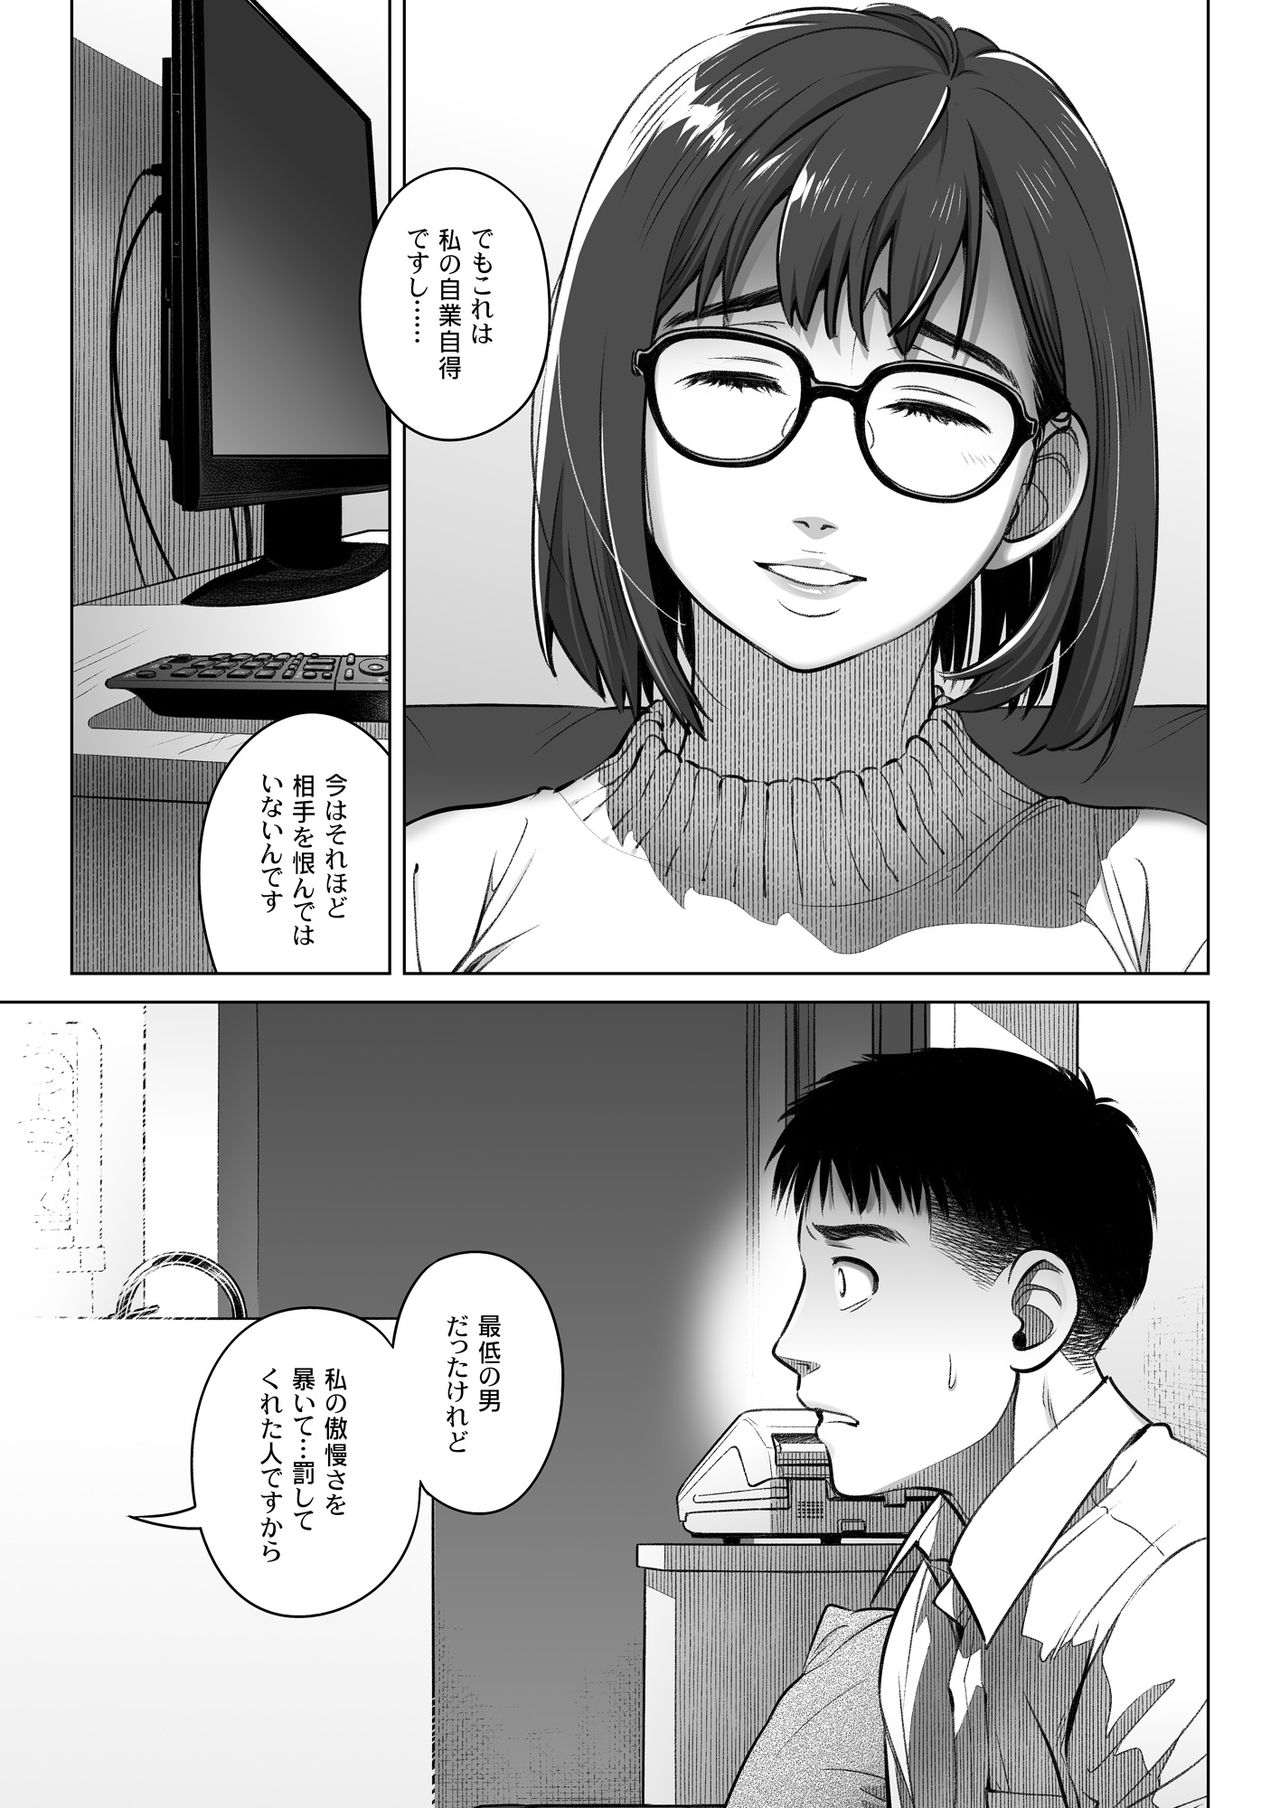 Kurata Akiko no Kokuhaku 2 - Confession of Akiko kurata Episode 2 - Foto 50